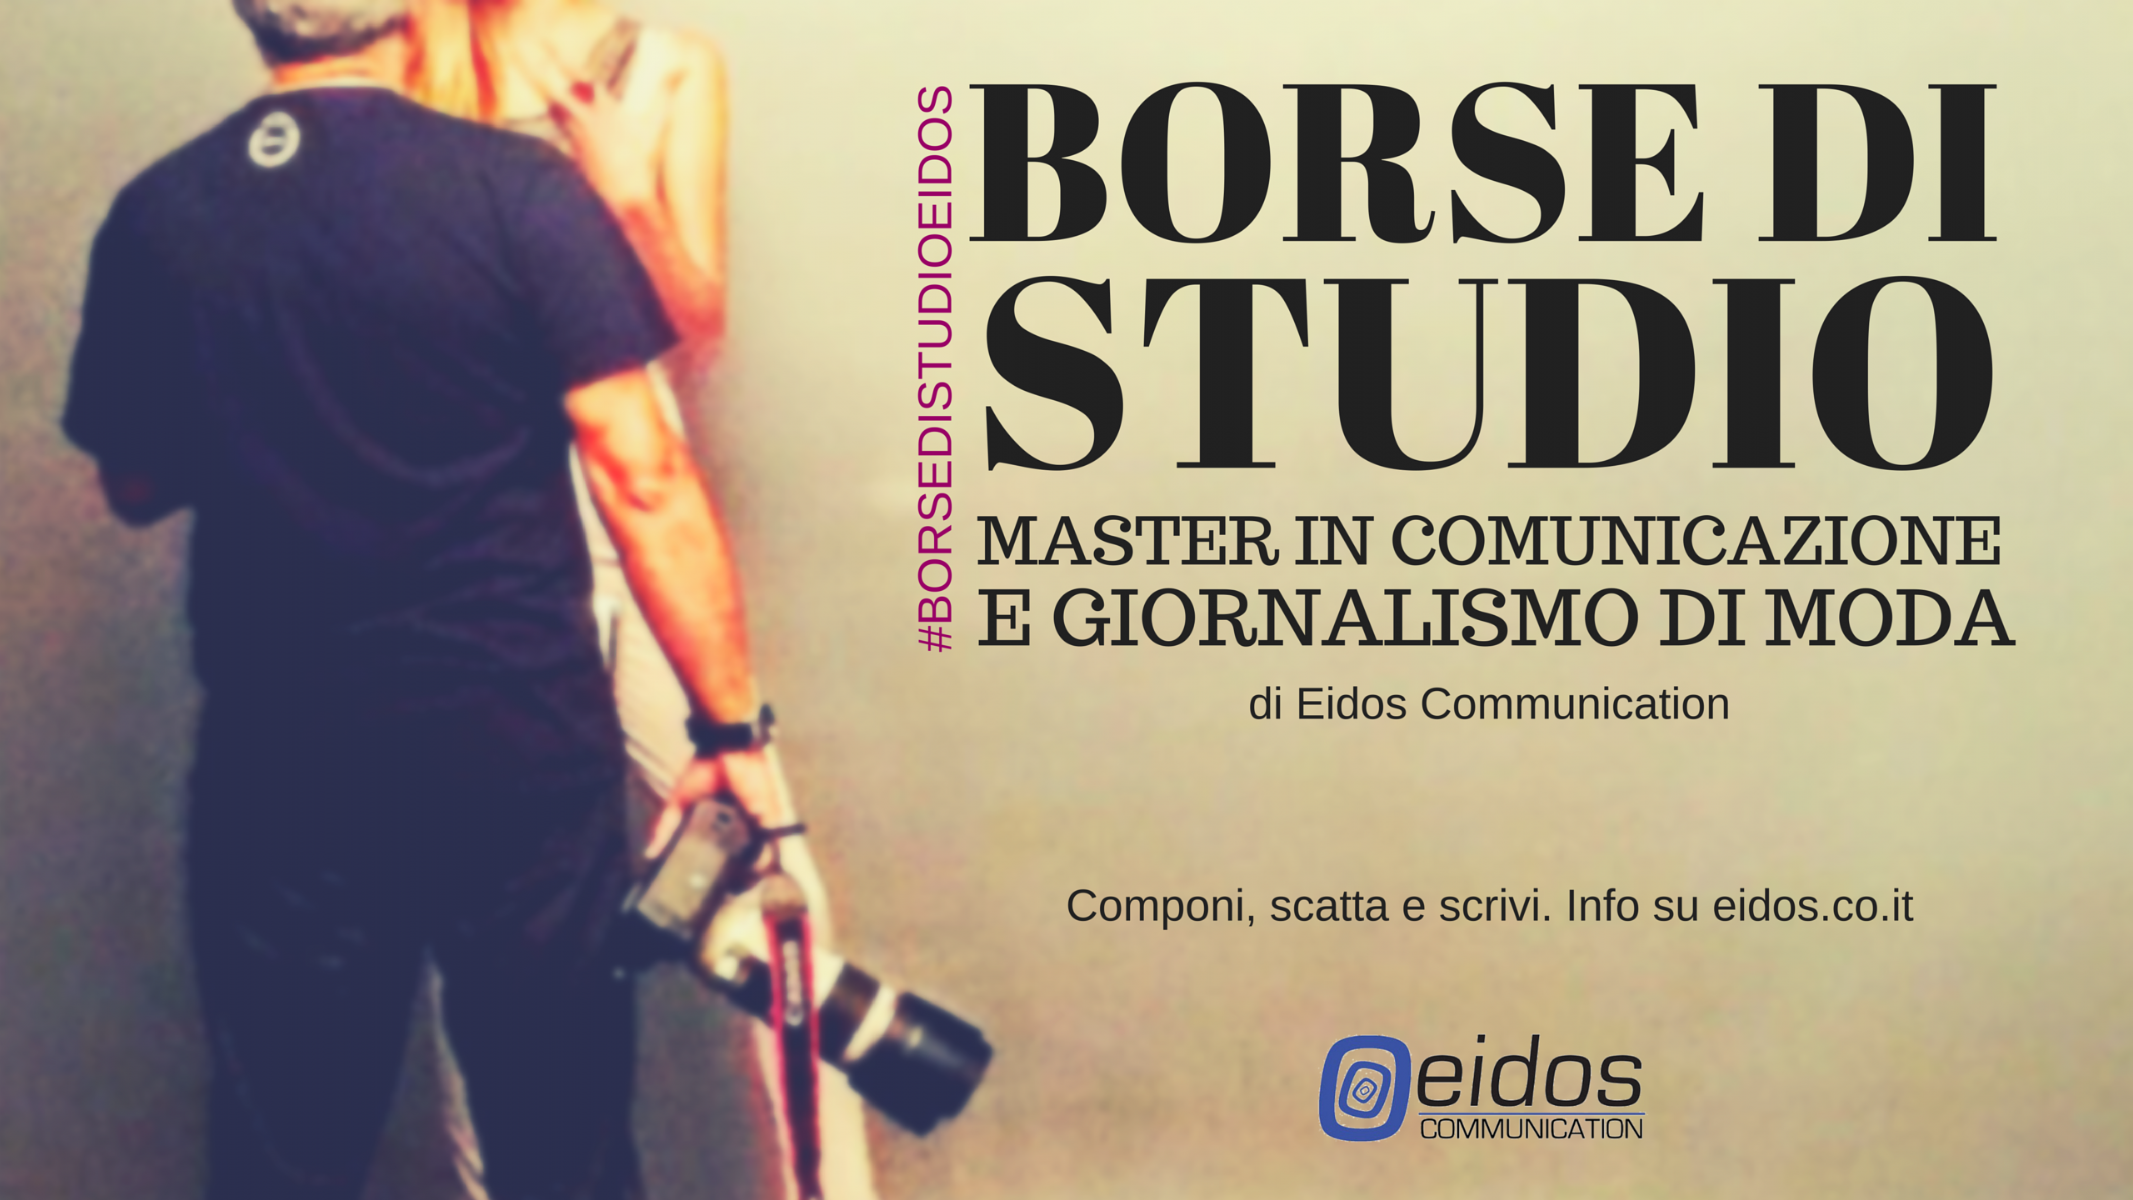 Borse di studio – Master in Comunicazione e Giornalismo di Moda di Eidos Communication